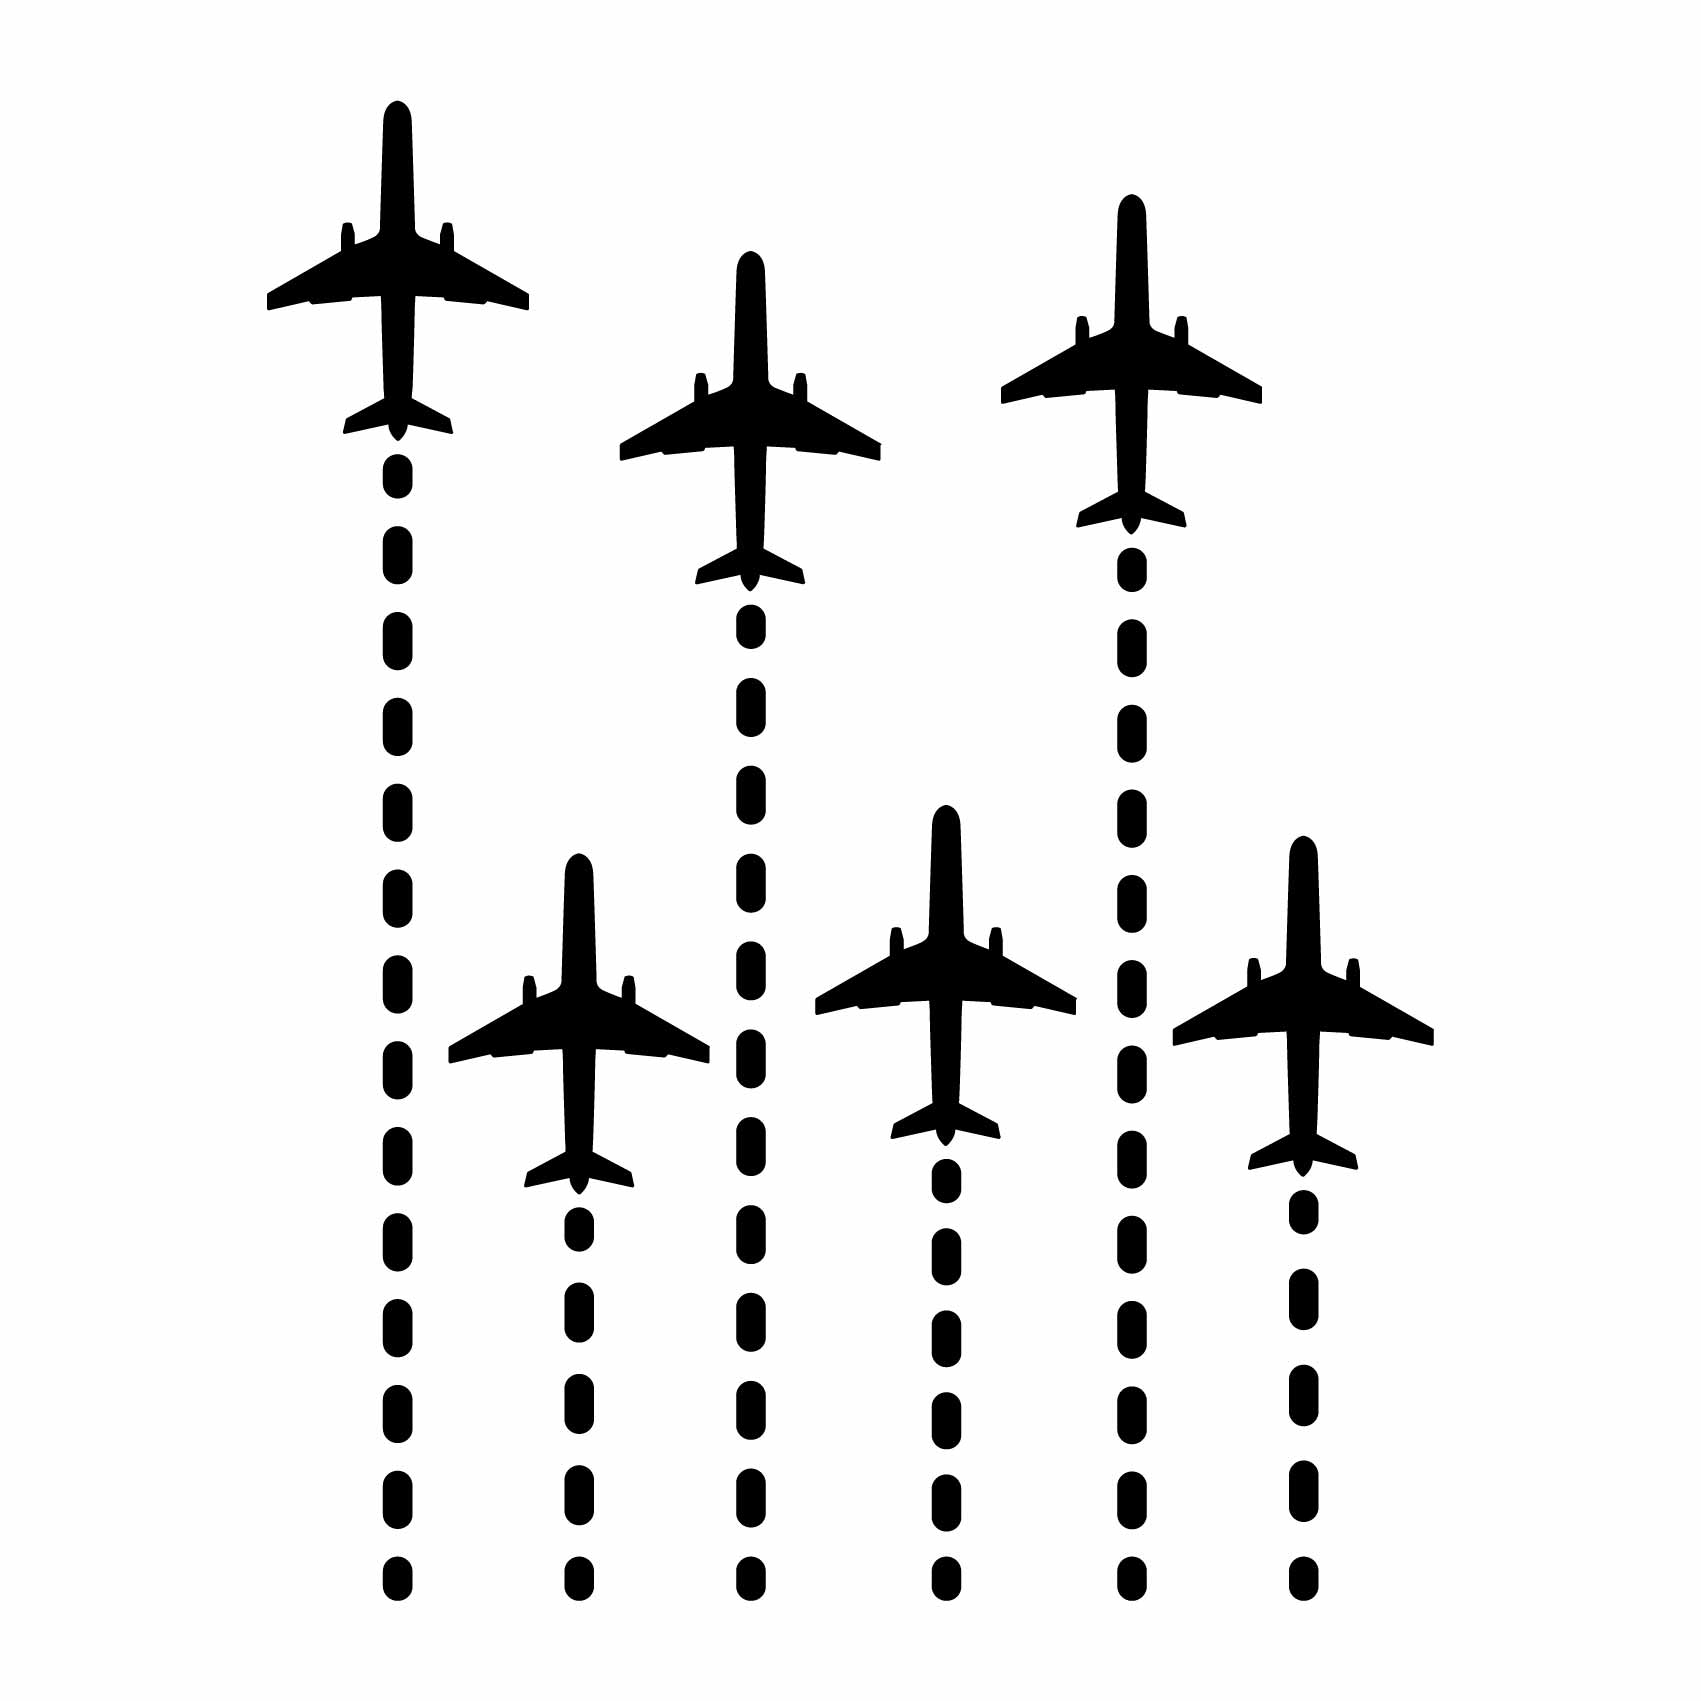 stickers-avions-lignes-ref15avion-stickers-muraux-avion-autocollant-deco-chambre-enfant-sticker-mural-avions-(2)